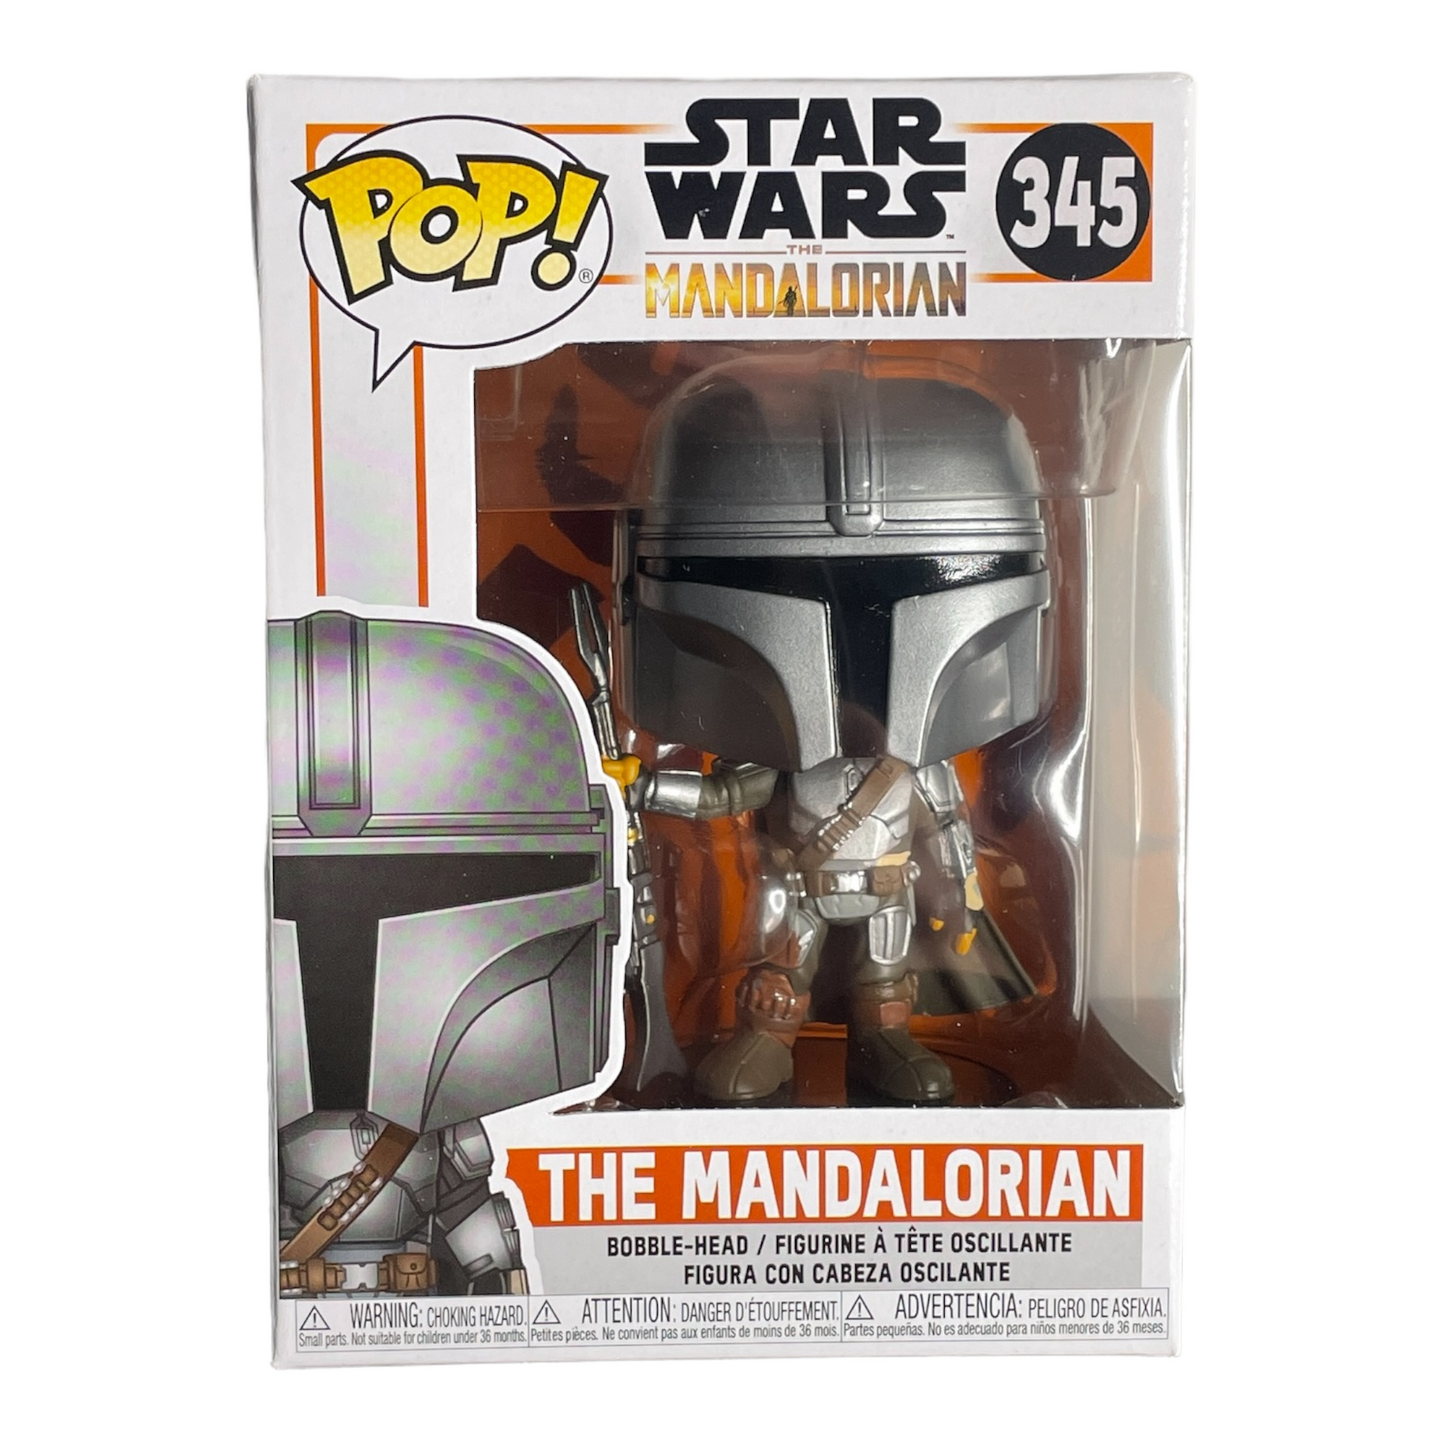 The Mandalorian #345